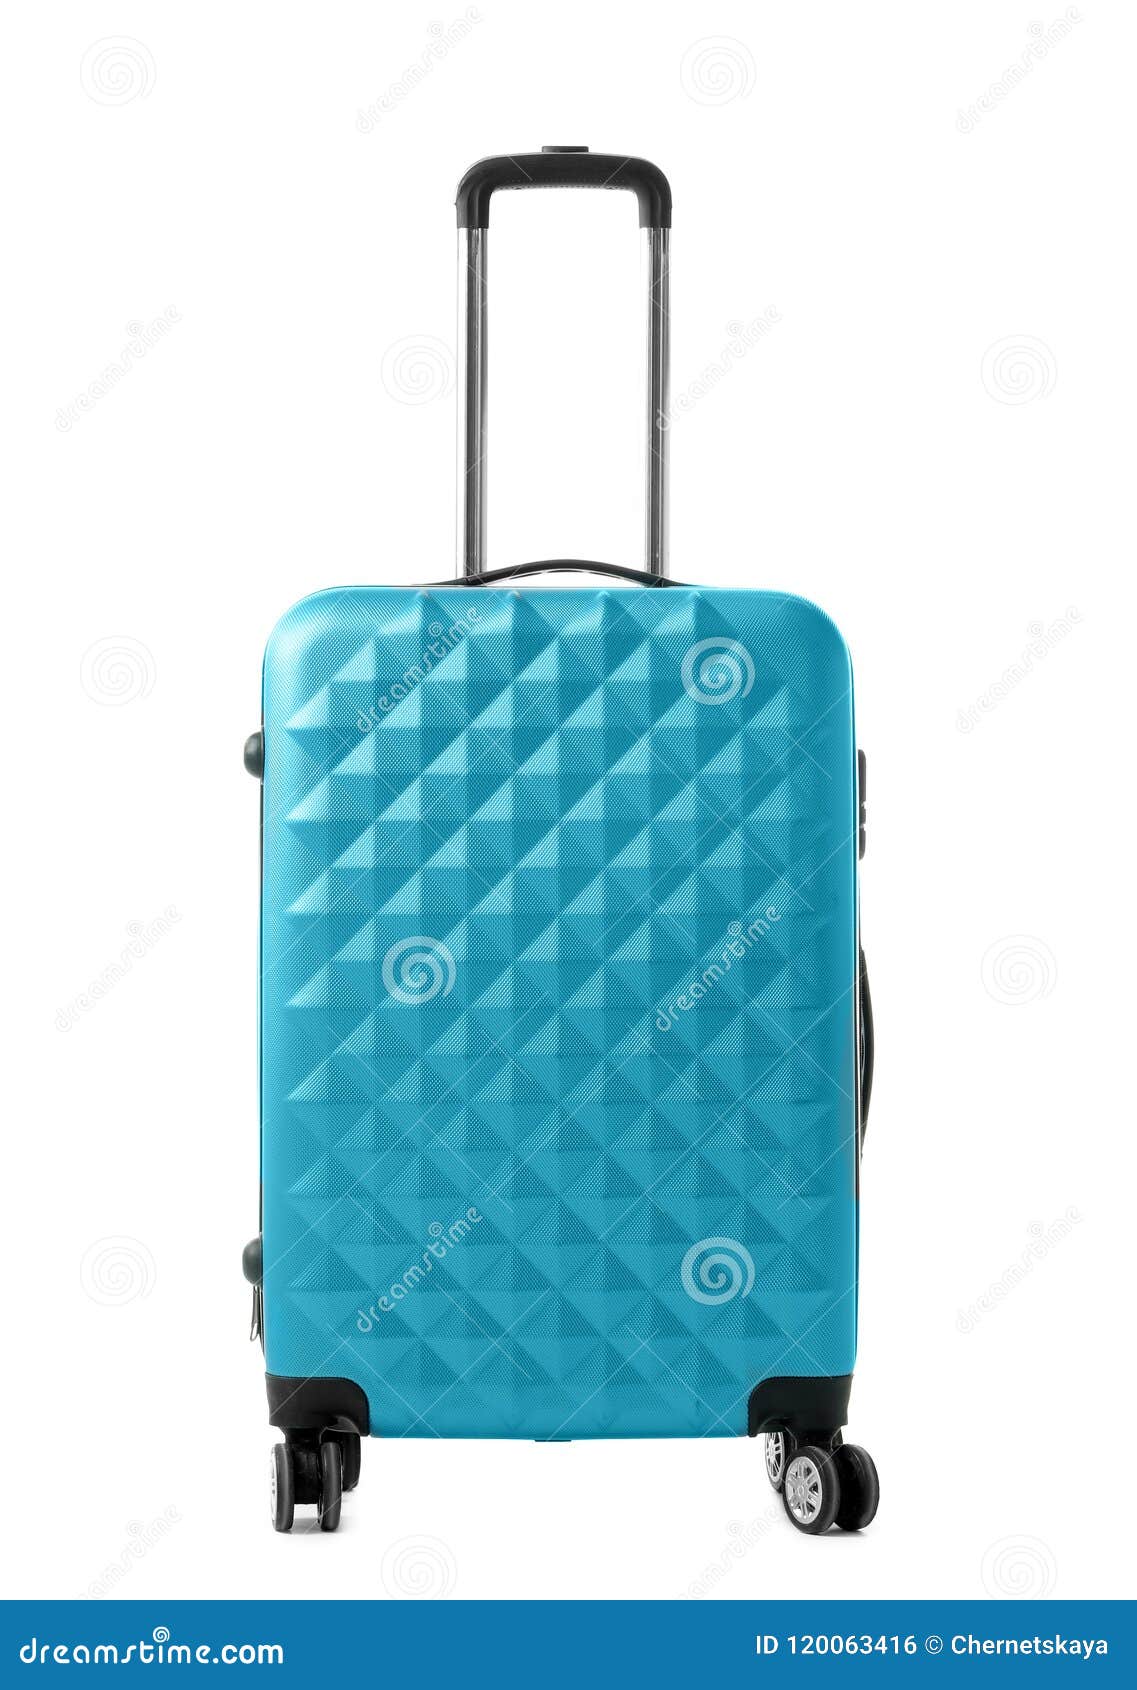 Blue Suitcase on White Background Stock Photo - Image of modern ...